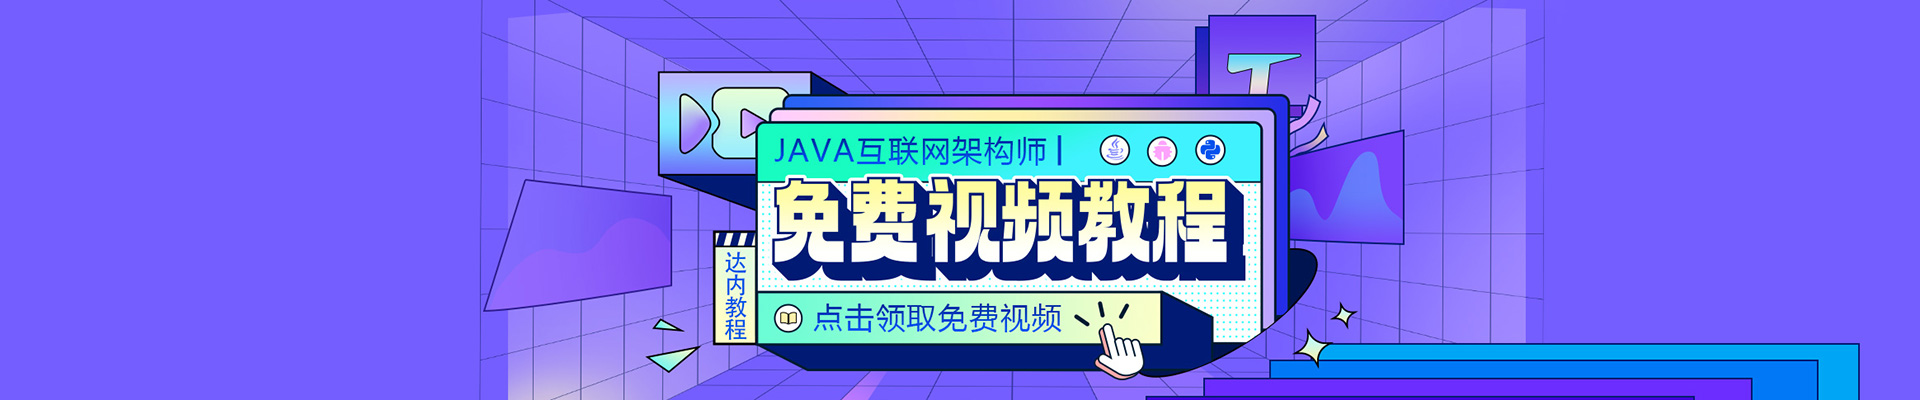 Java免费视频教程